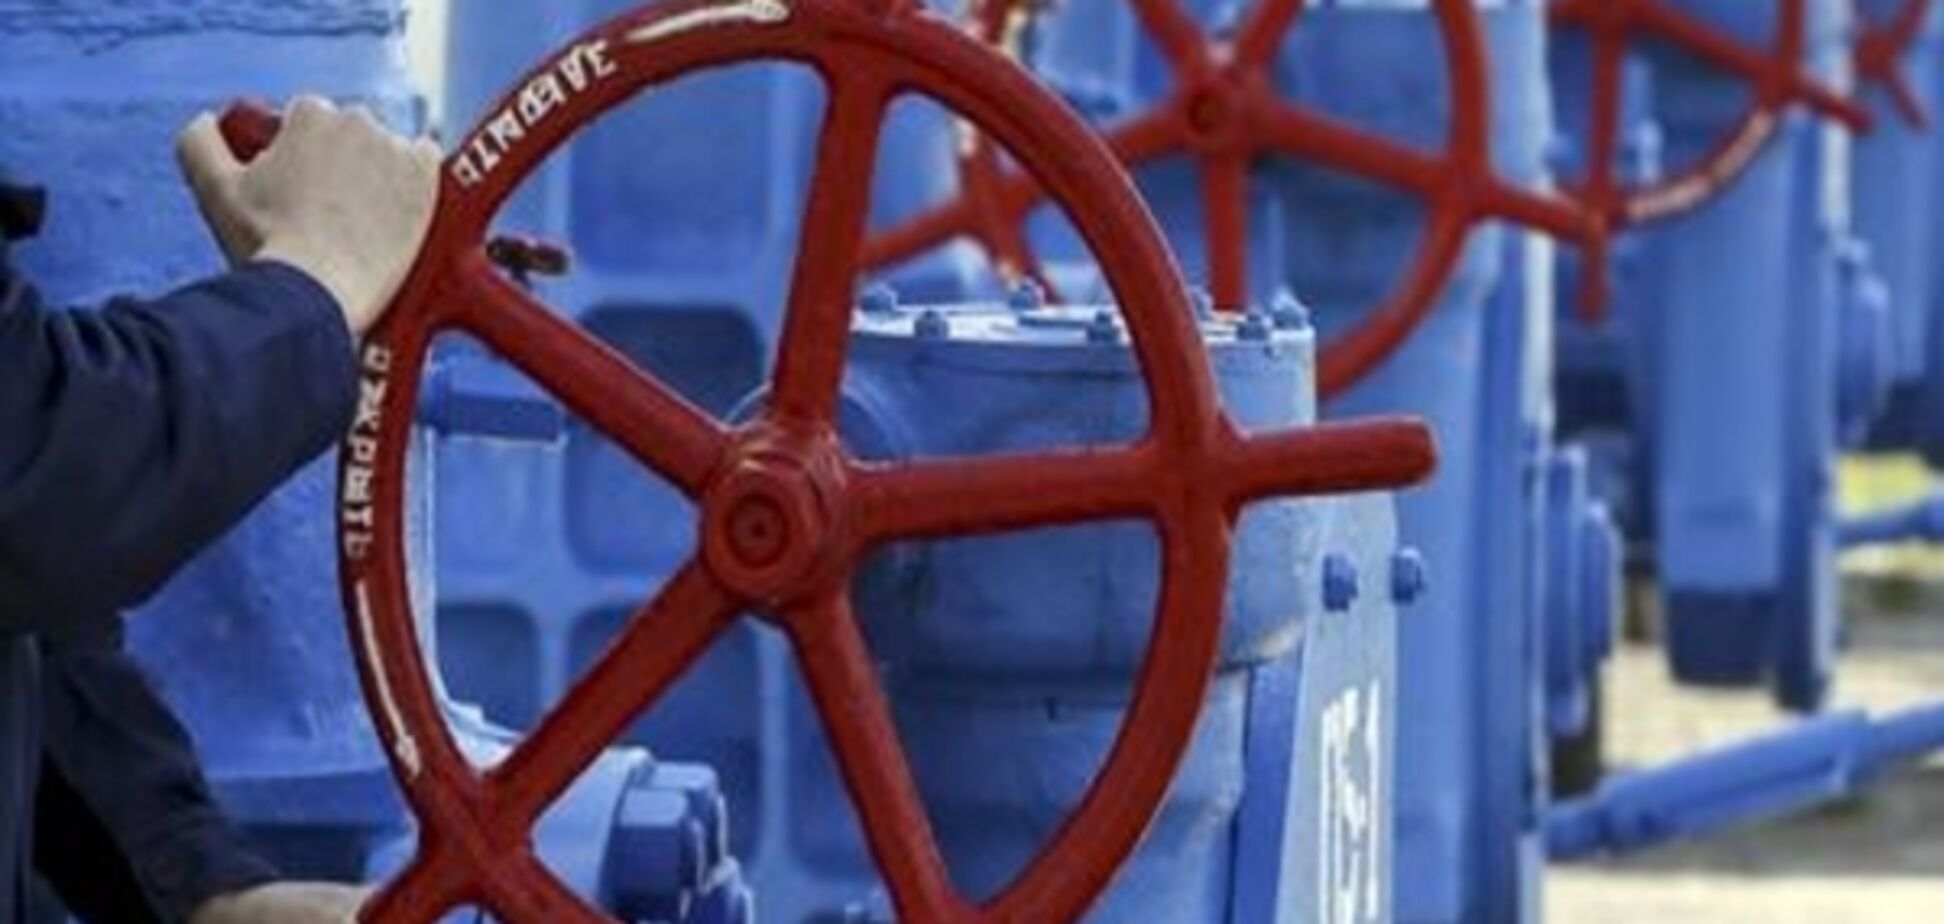 Коментар: Стокгольмський арбітраж зняв з України газовий зашморг Росії